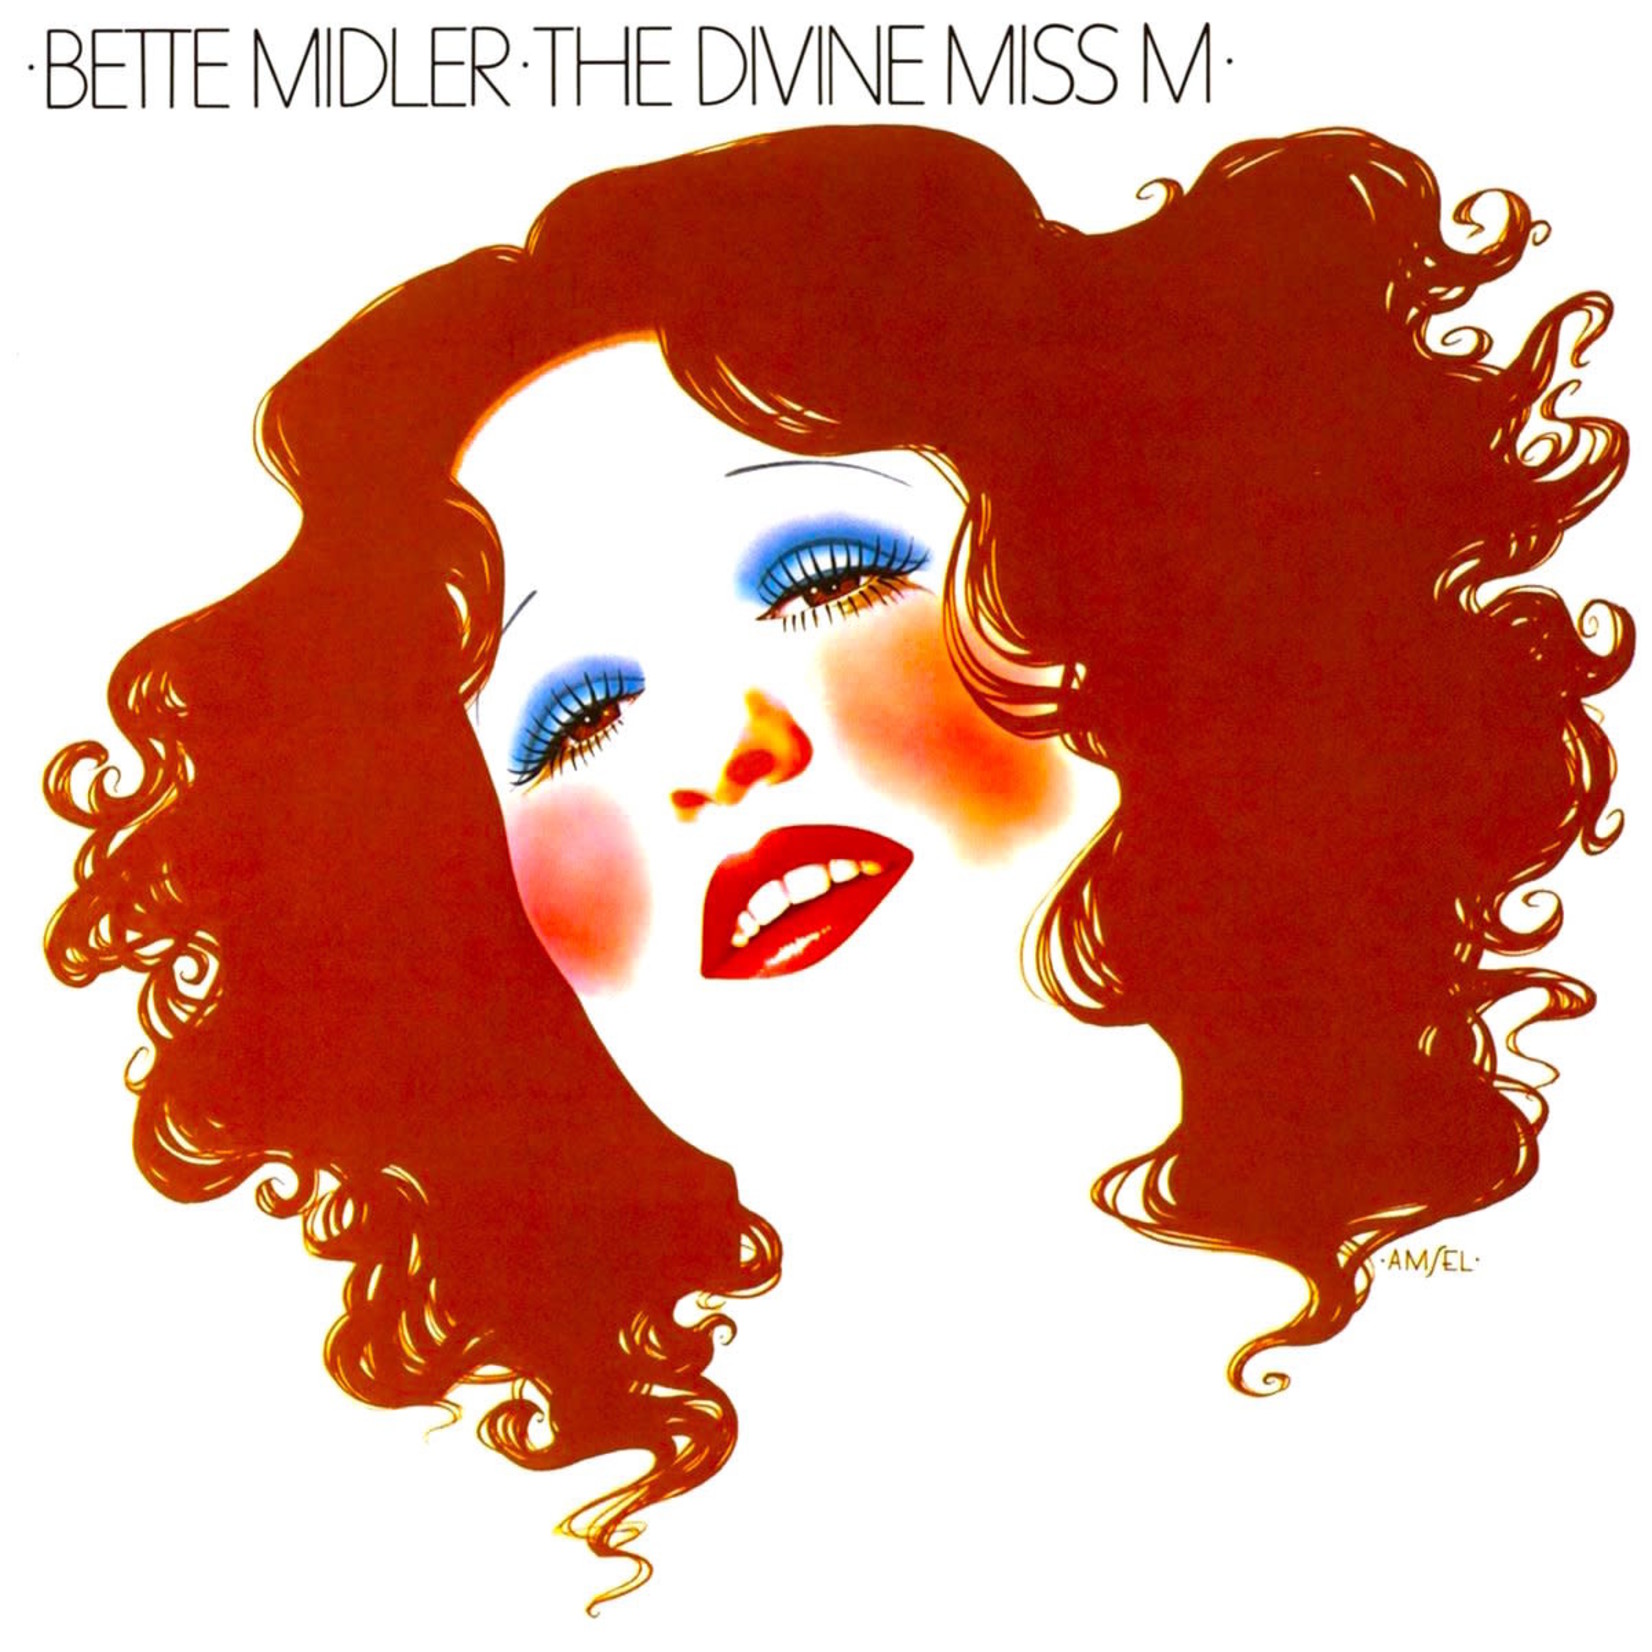 [Vintage] Bette Midler - The Divine Miss M